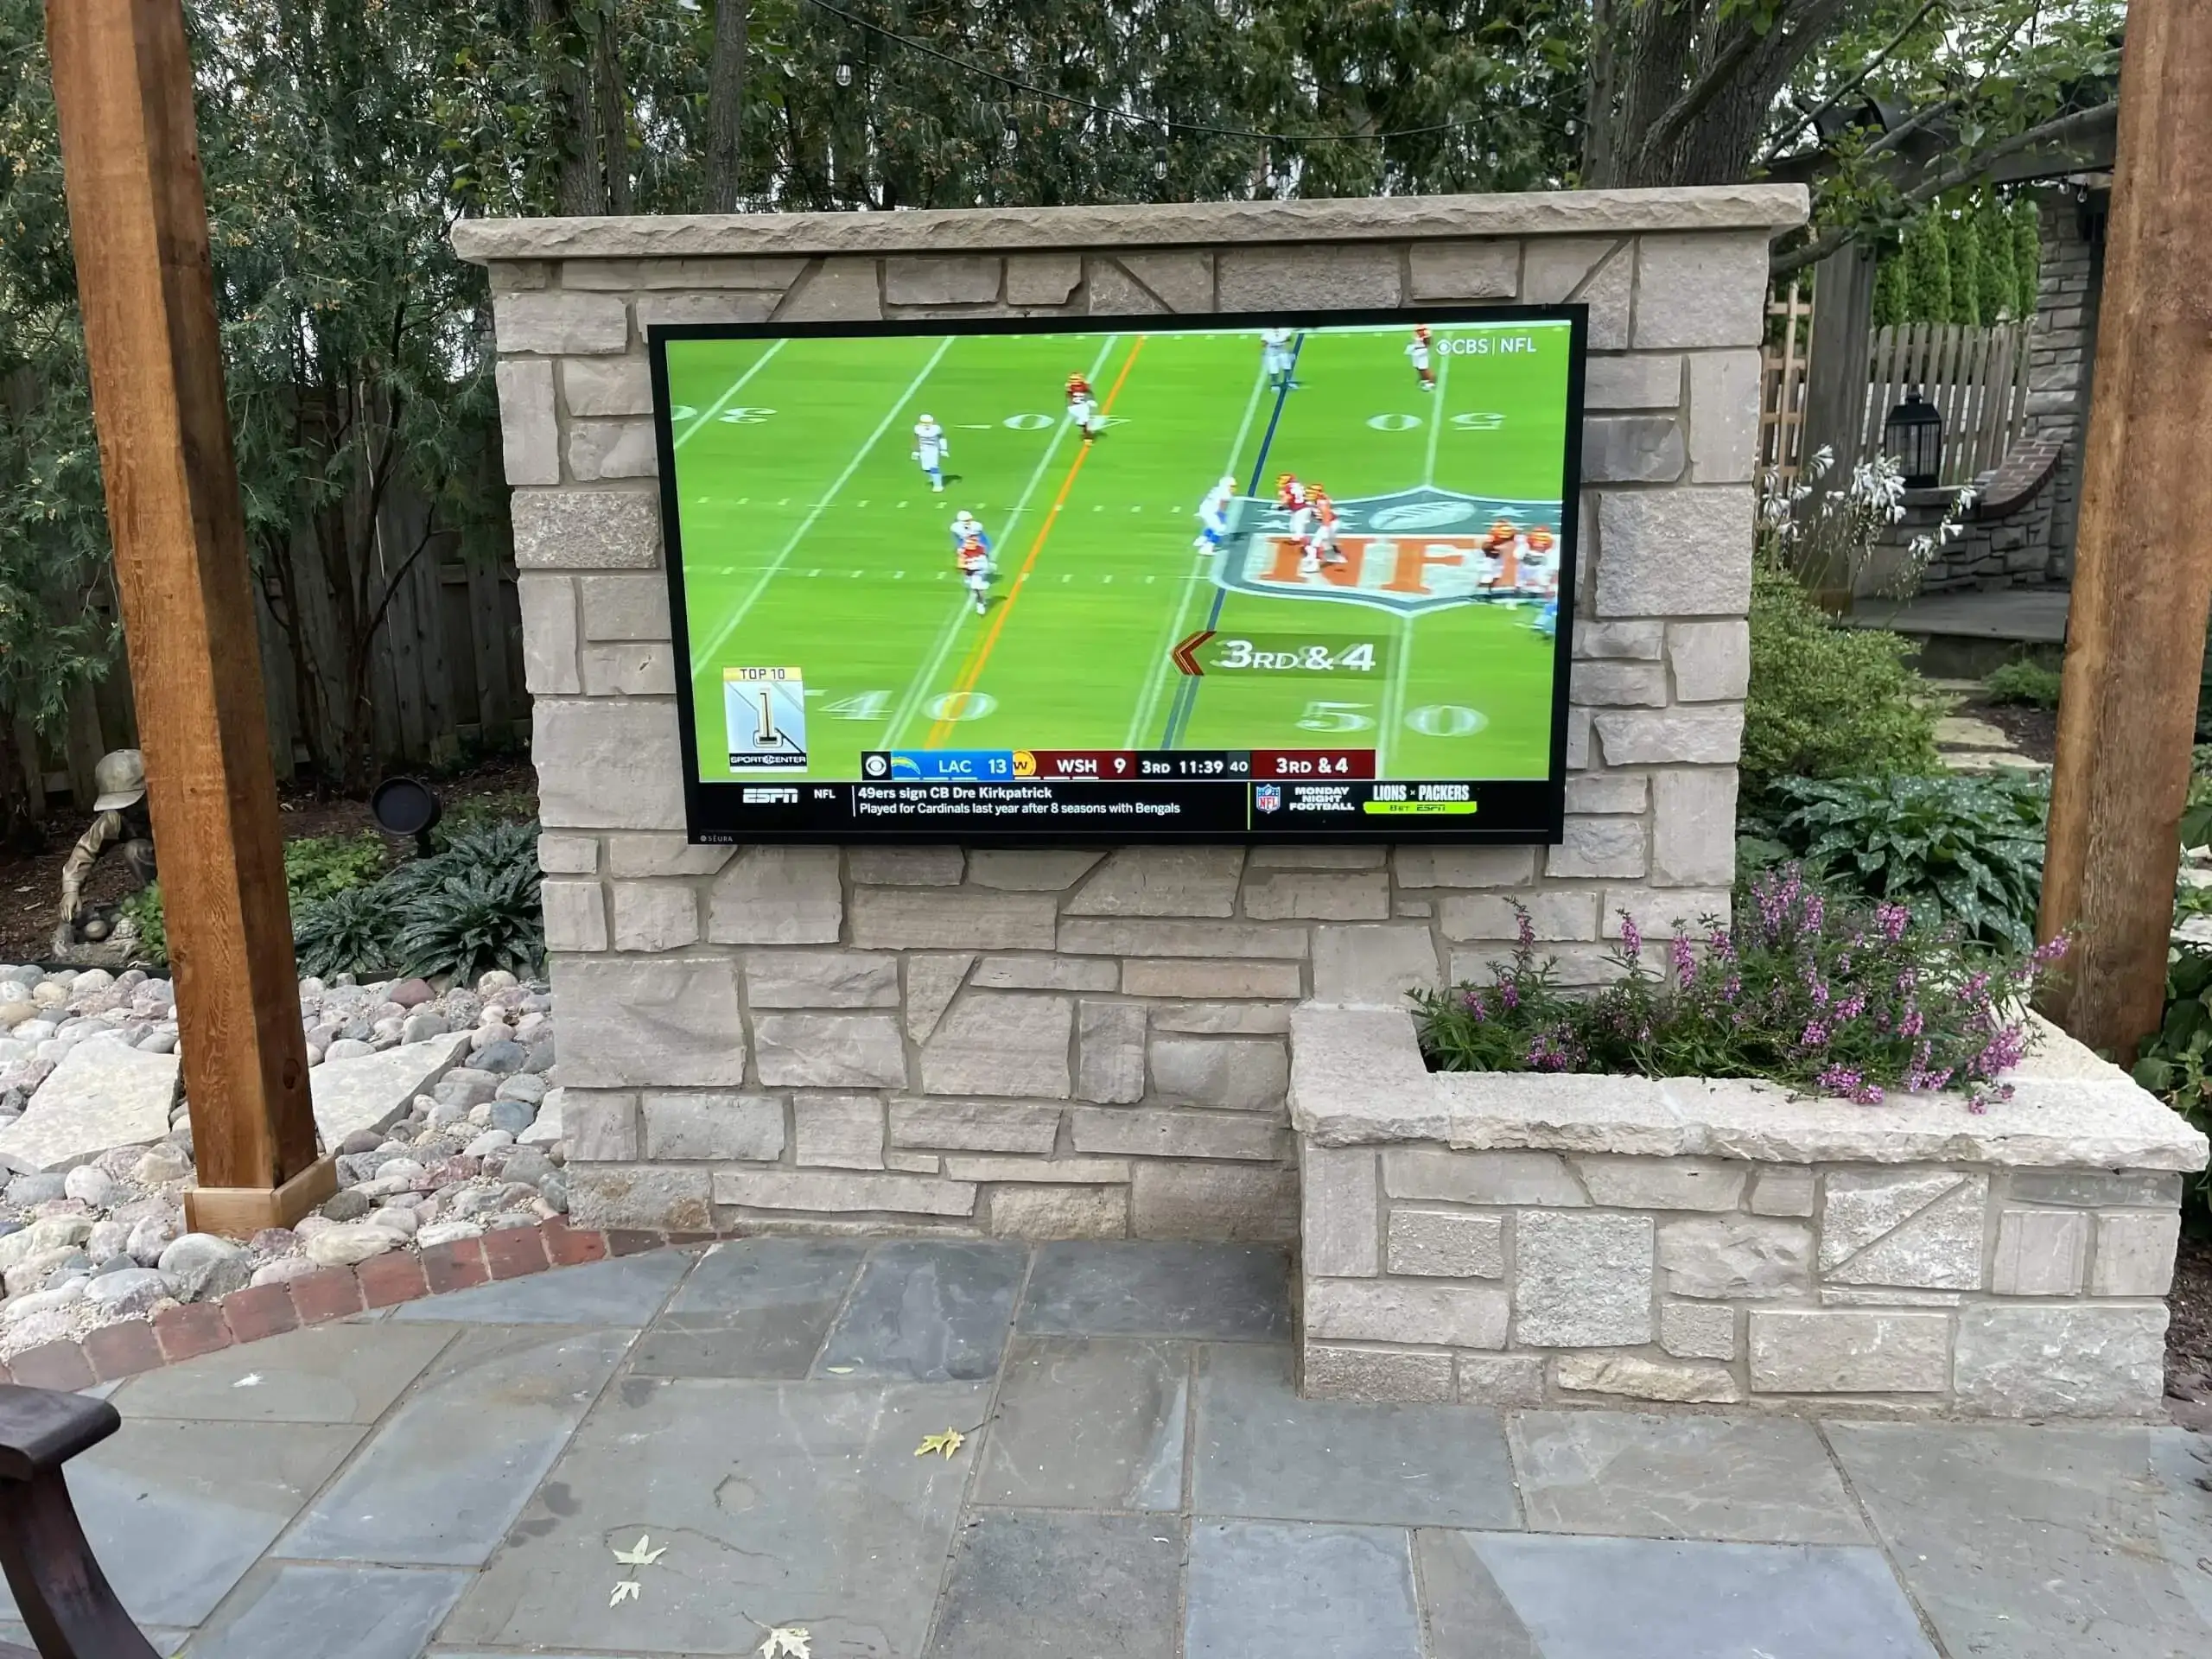 Outdoor TV Installation